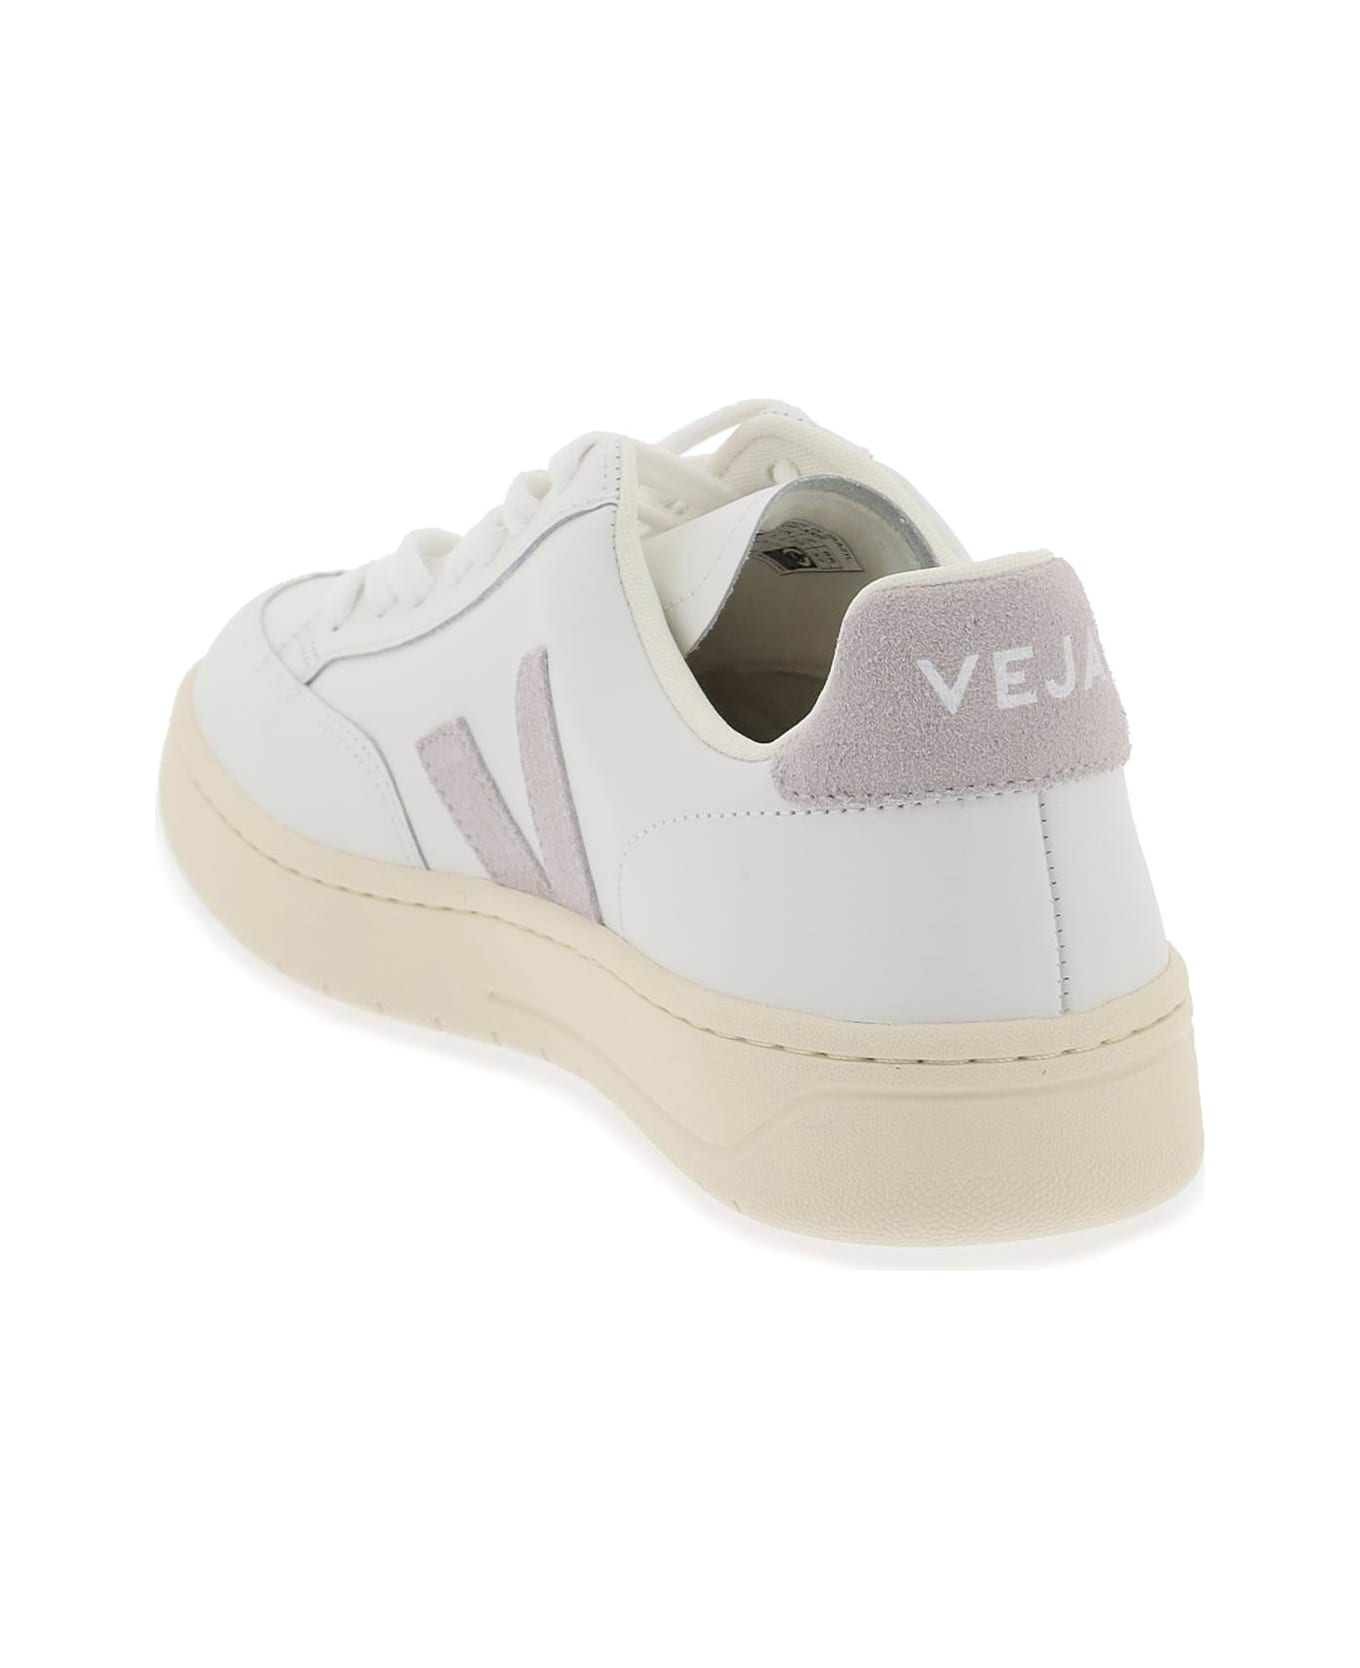 Veja Leather V-12 Sneakers - EXTRA WHITE LIGHT GREY (White)